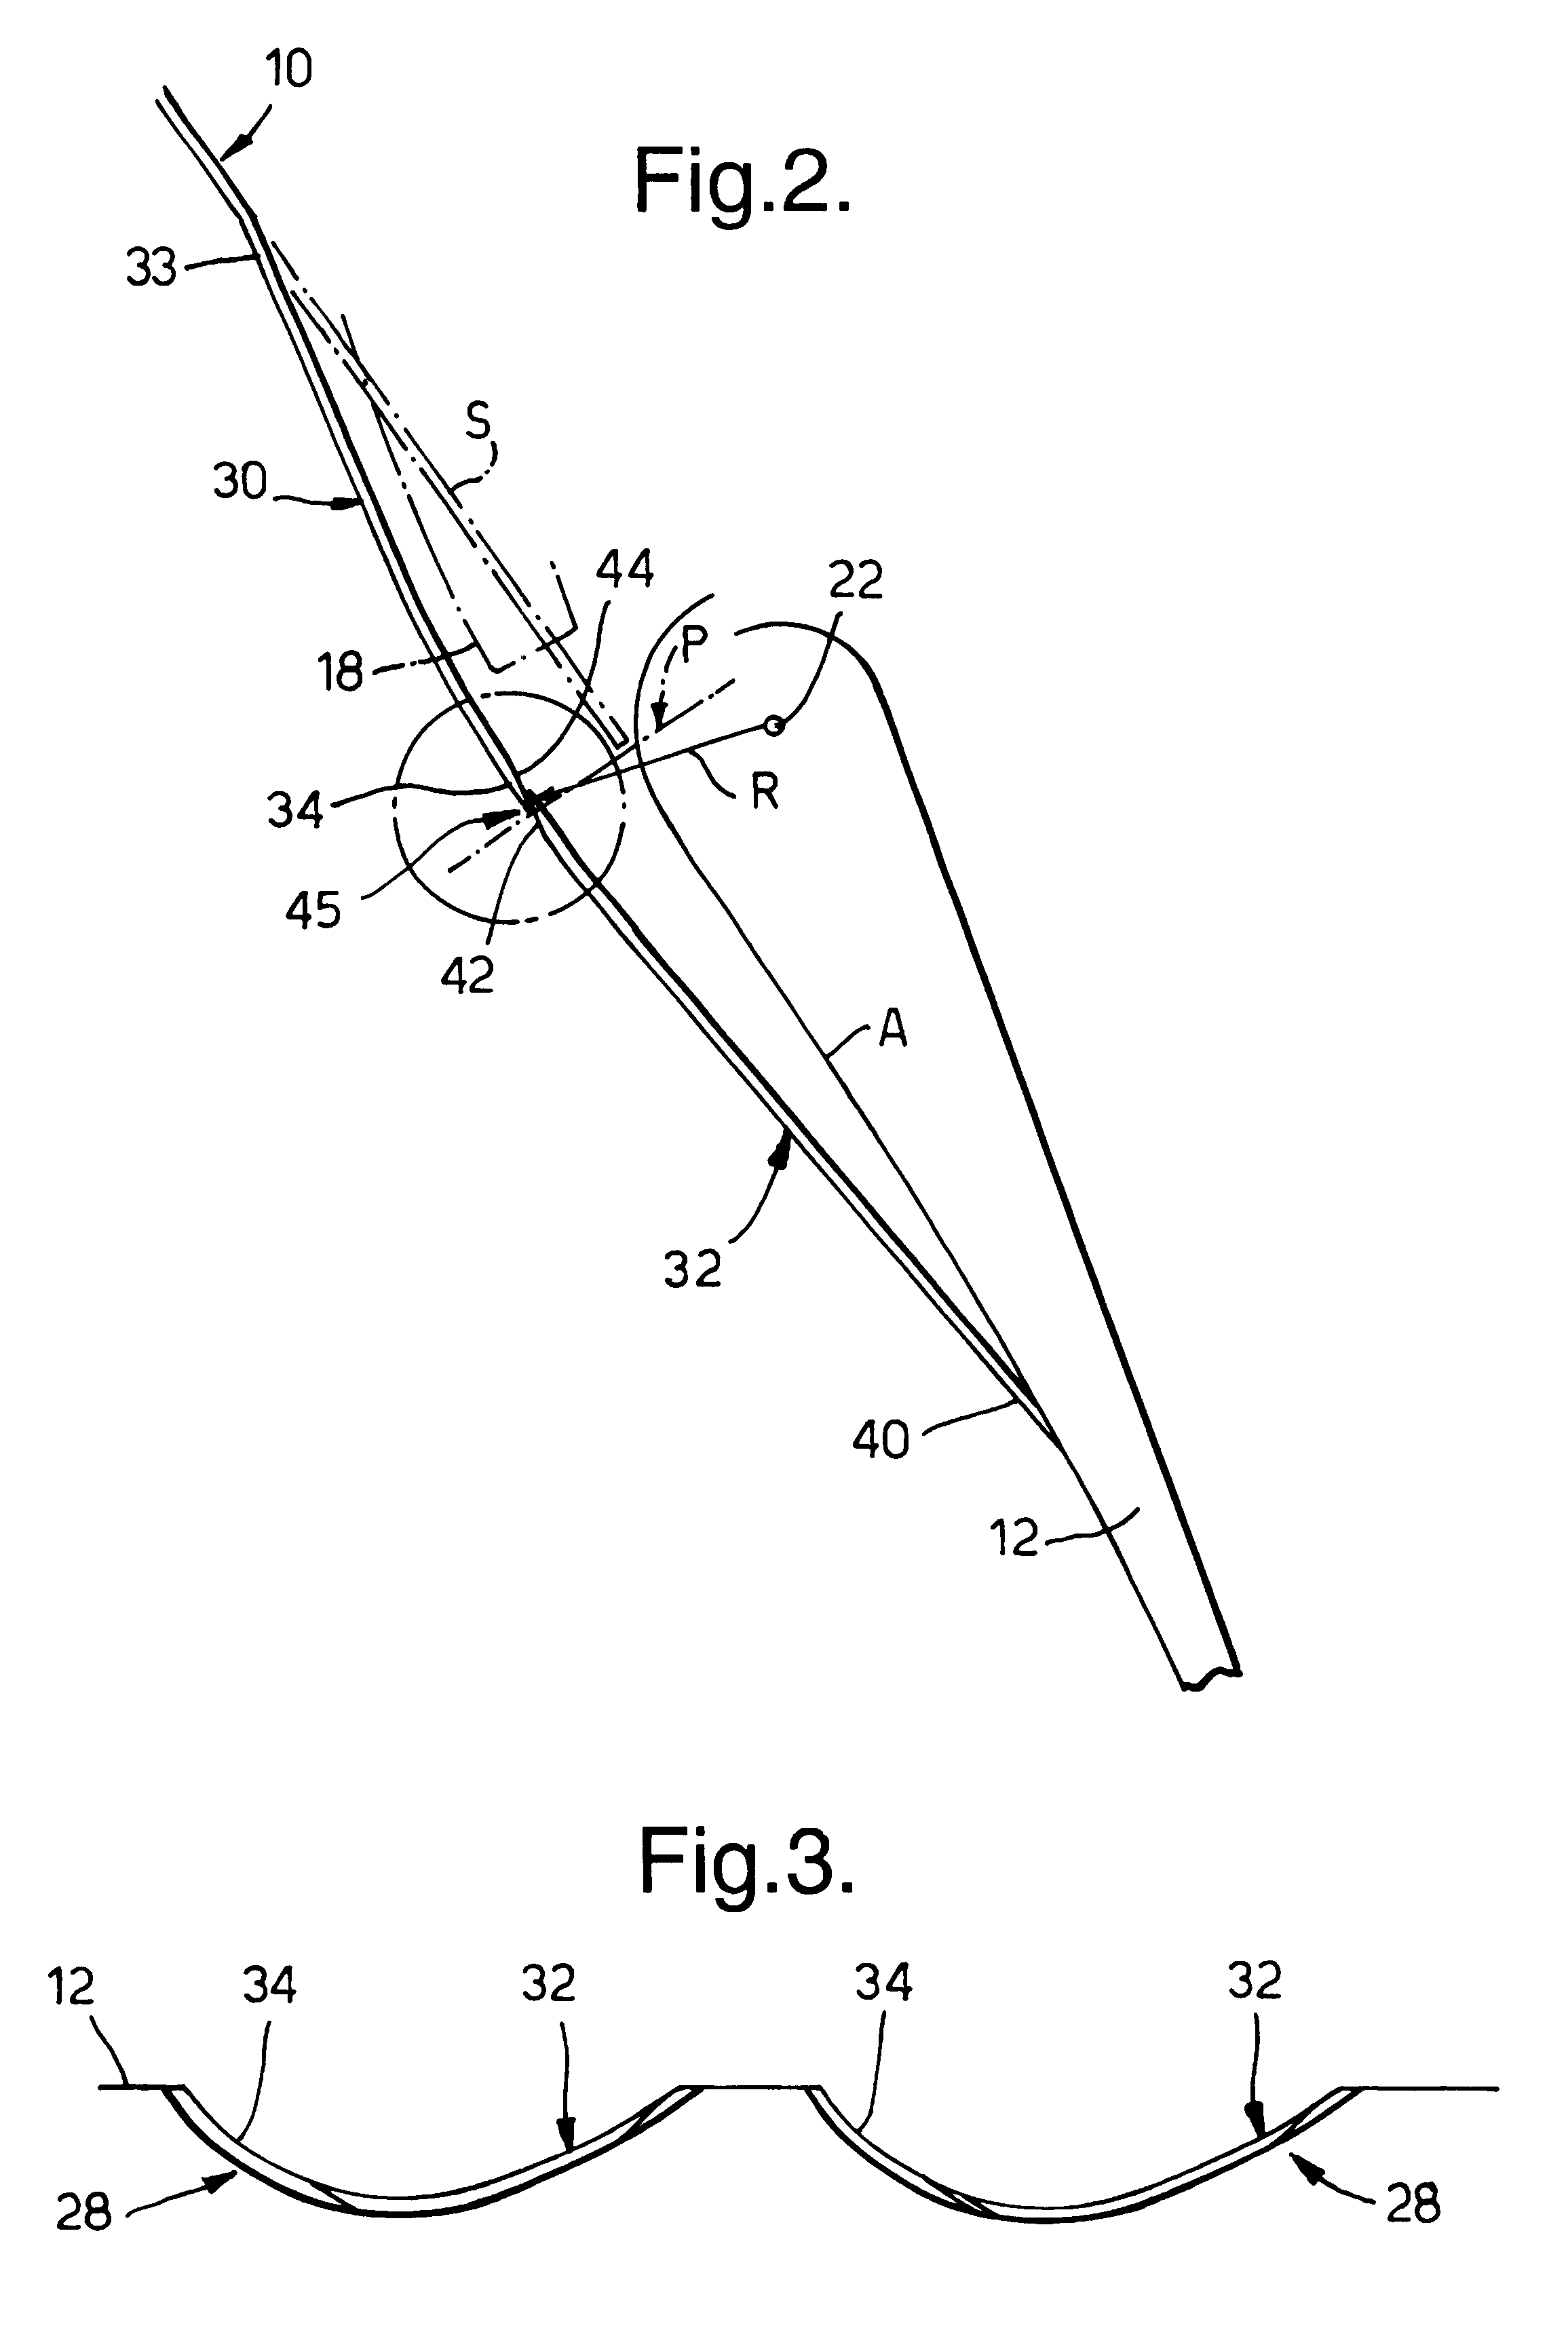 Fairing arrangement for an aircraft